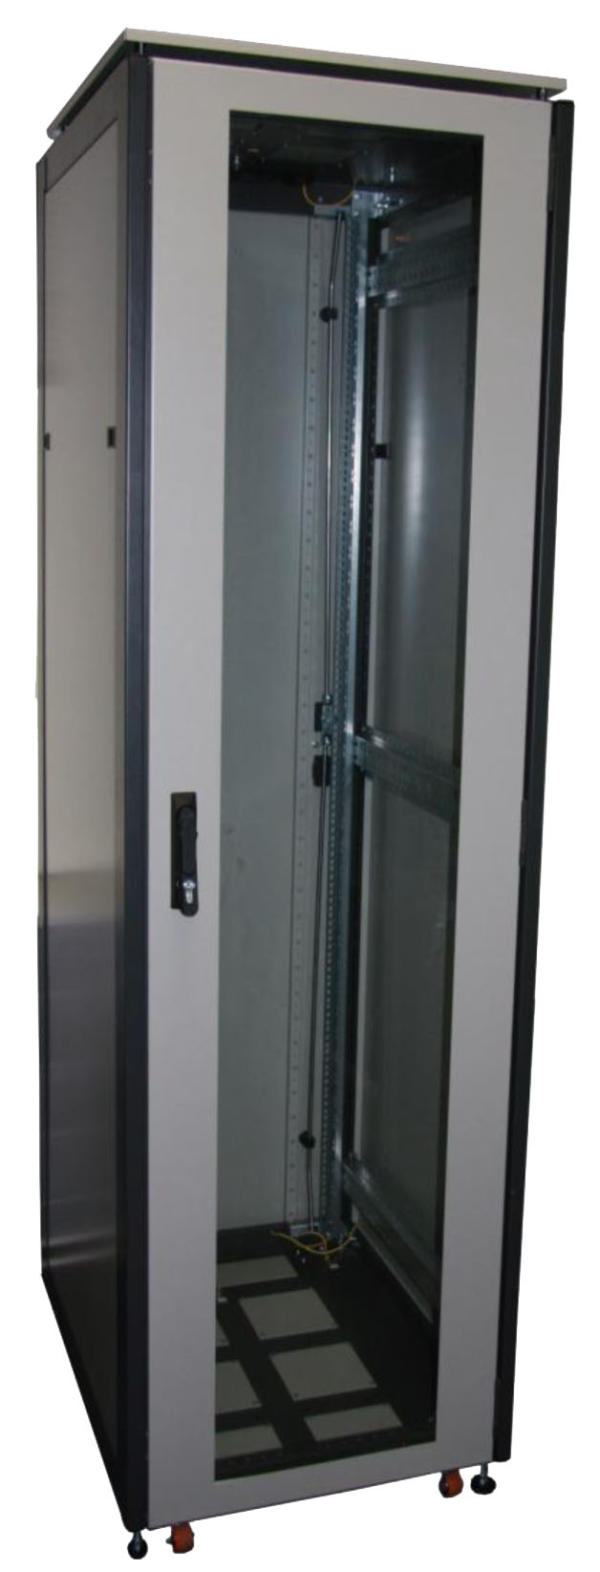 ССКТБ ТОМАСС ШТК-8612Э-00 - шкаф телекоммуникационный 19", 24U, 800х600х1200 мм, с металлической и стеклянной дверью